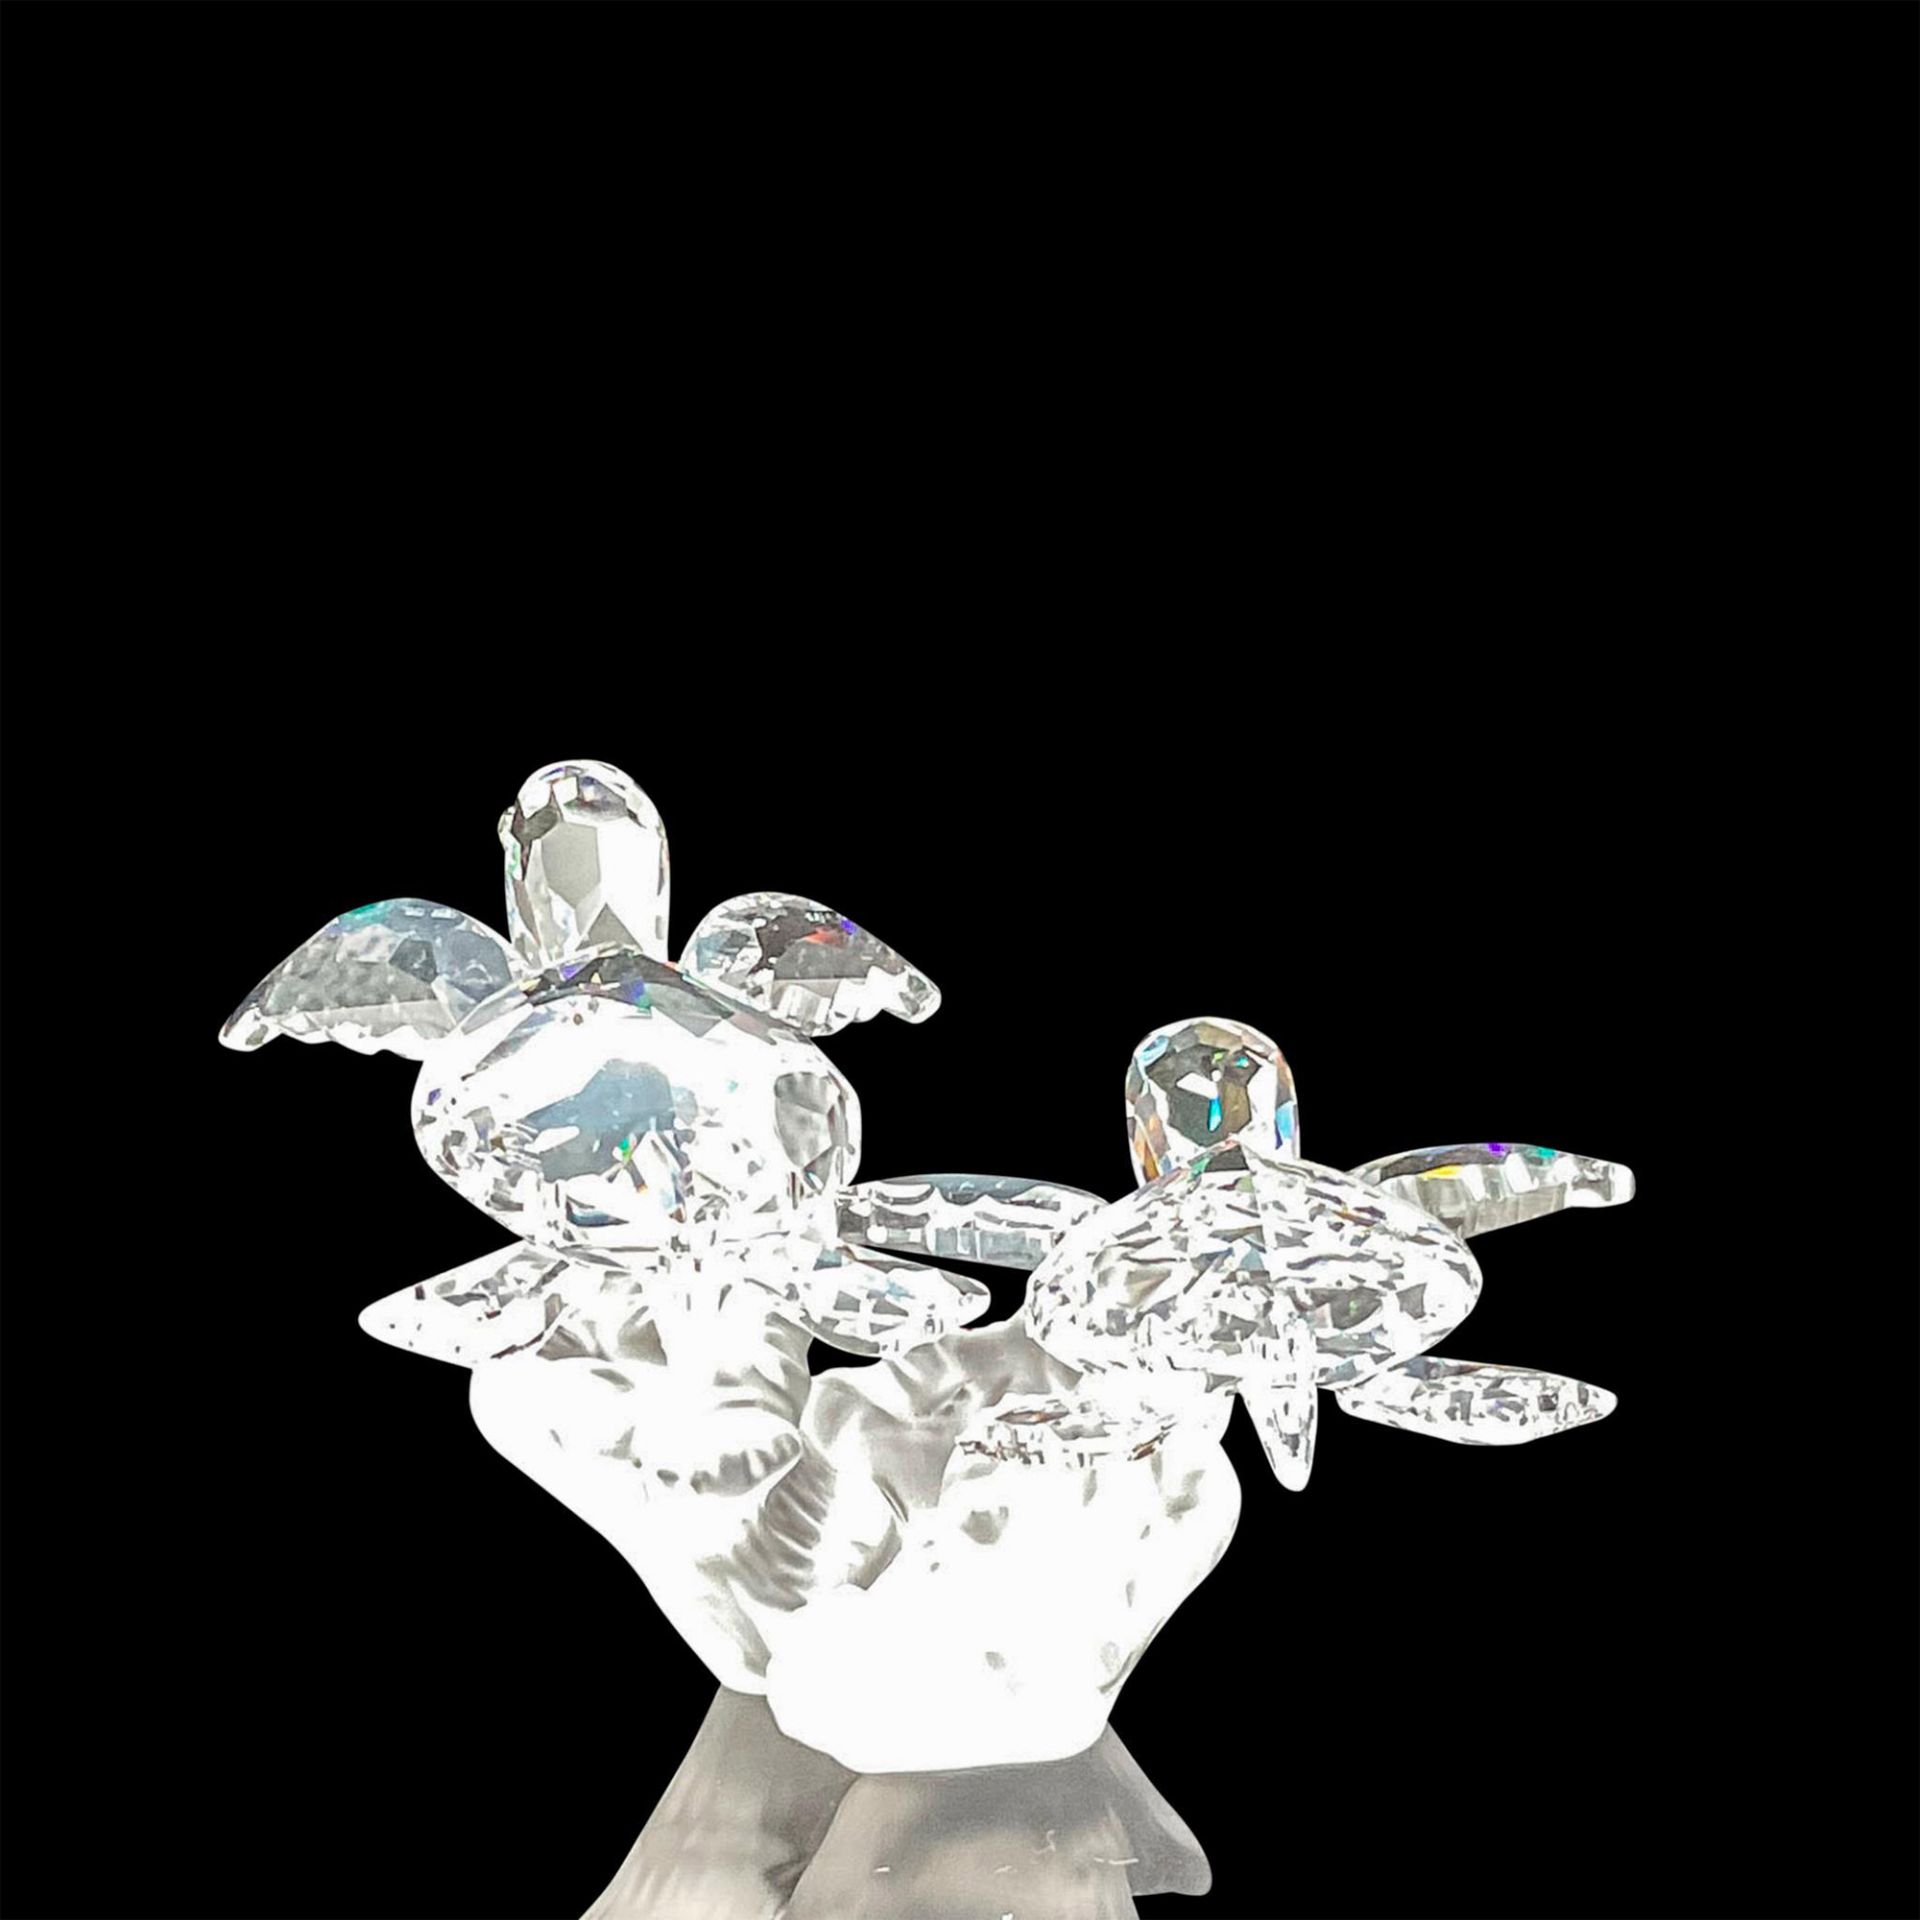 Swarovski Crystal Figurine, Baby Sea Turtles - Image 3 of 5